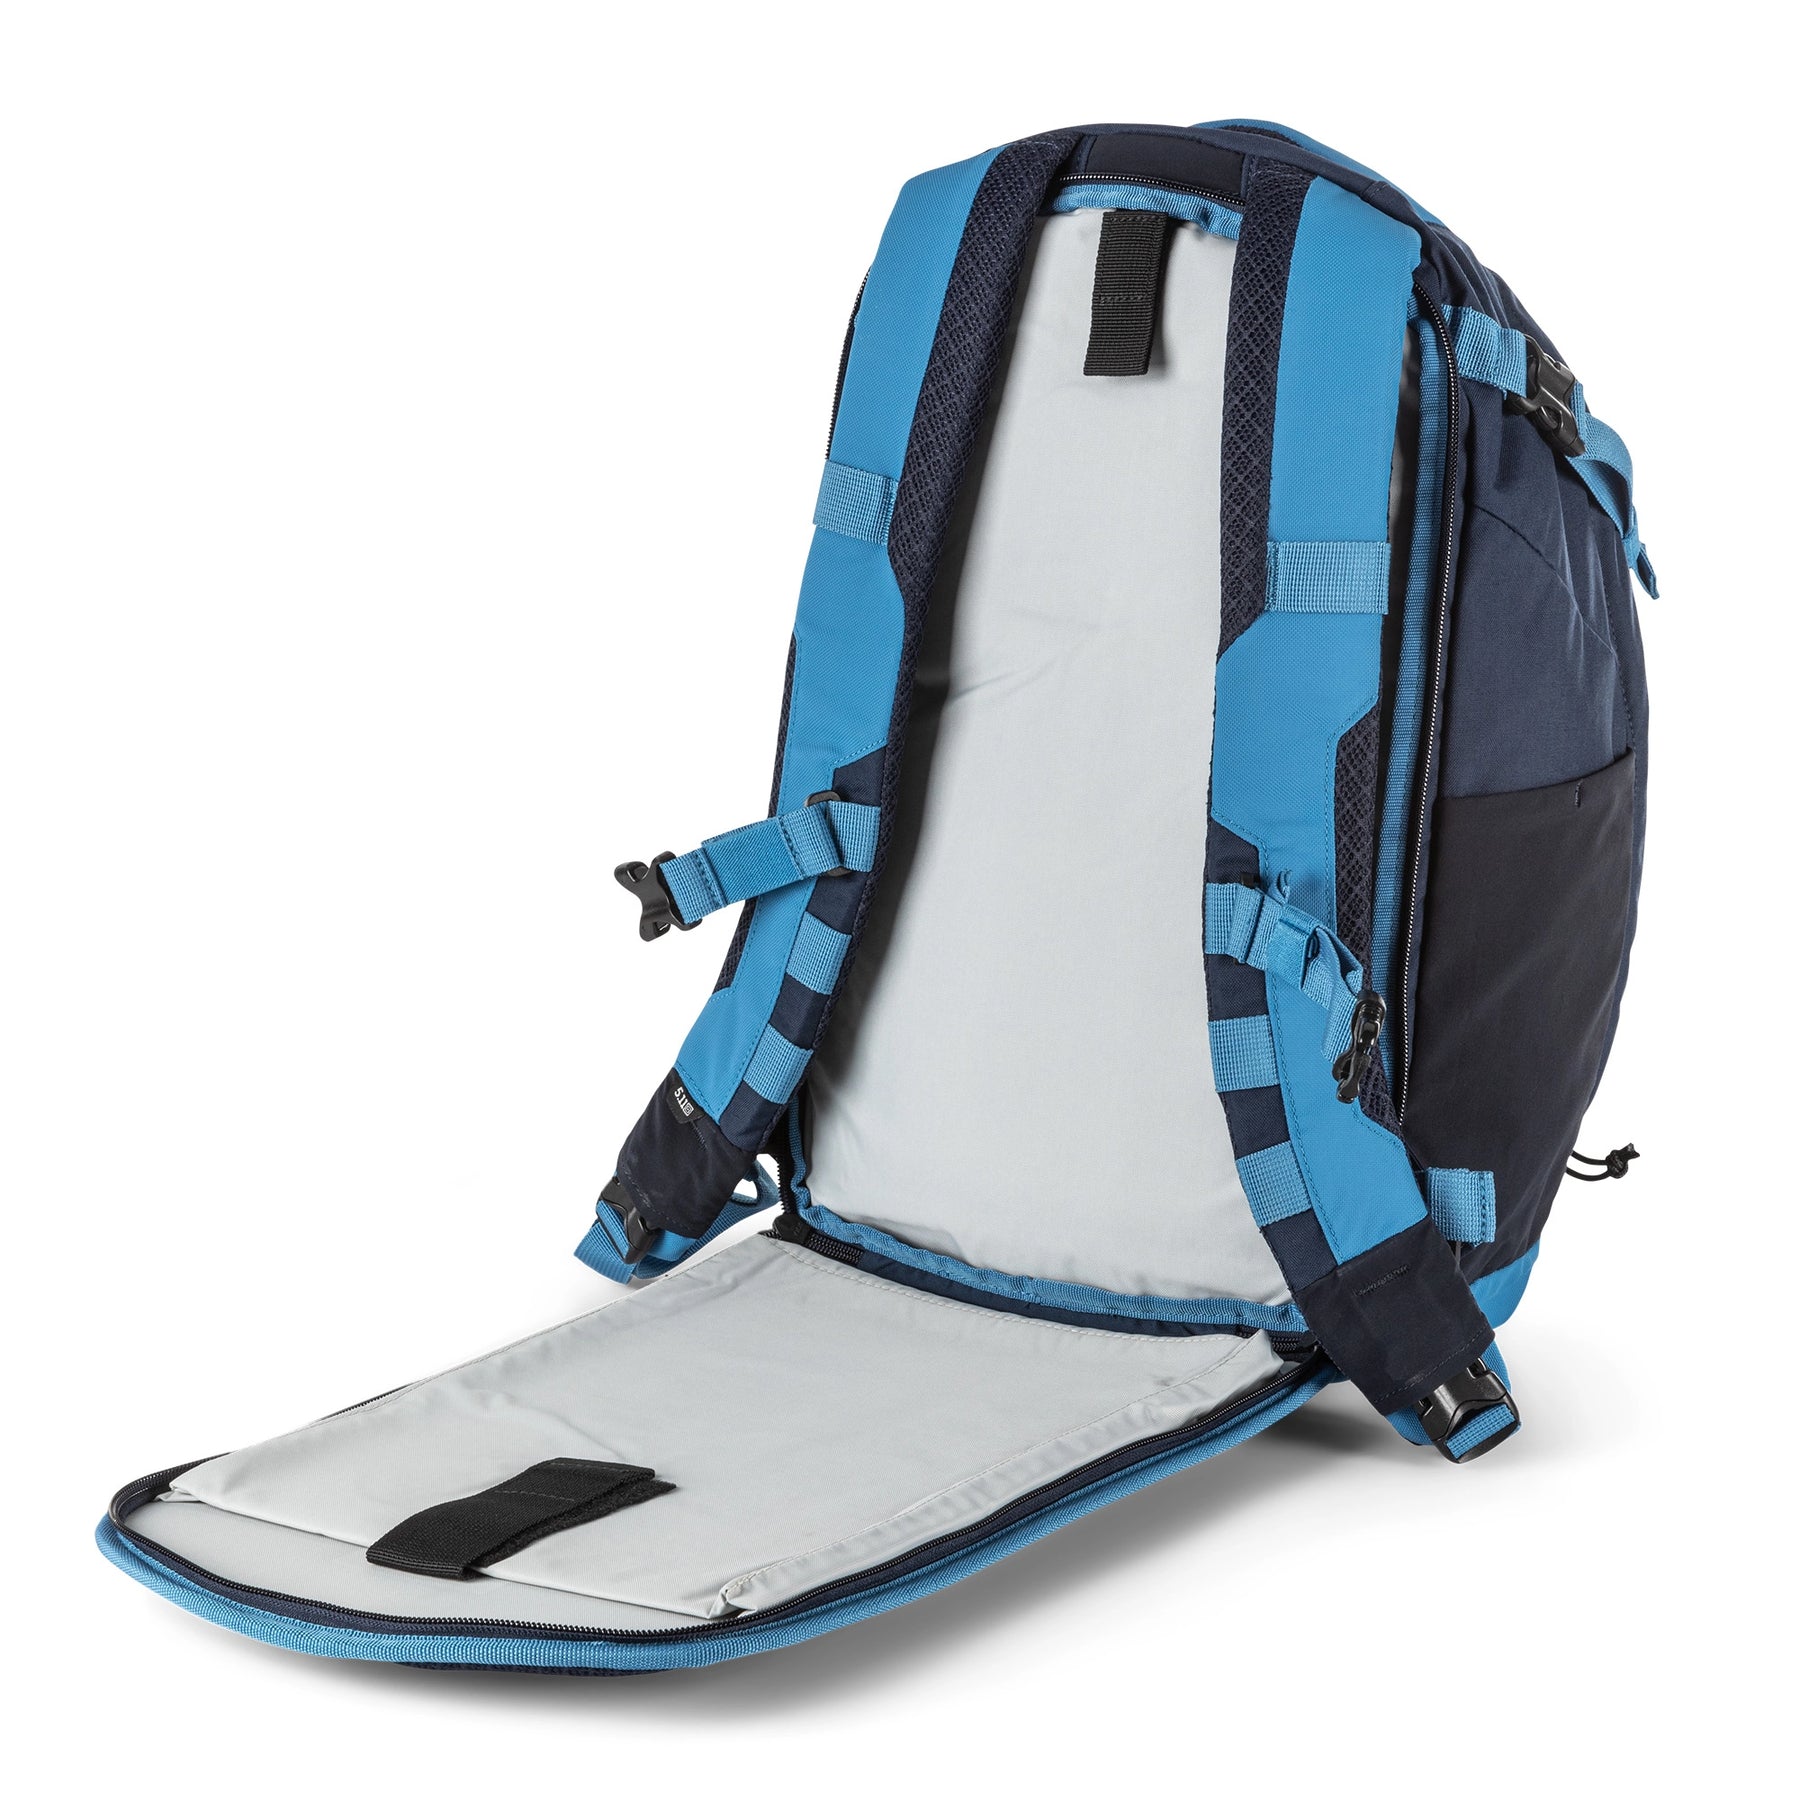 Zaino COVRT18 di 5.11 Pacific Blue - vista tasca posteriore per laptop e sacca idrica